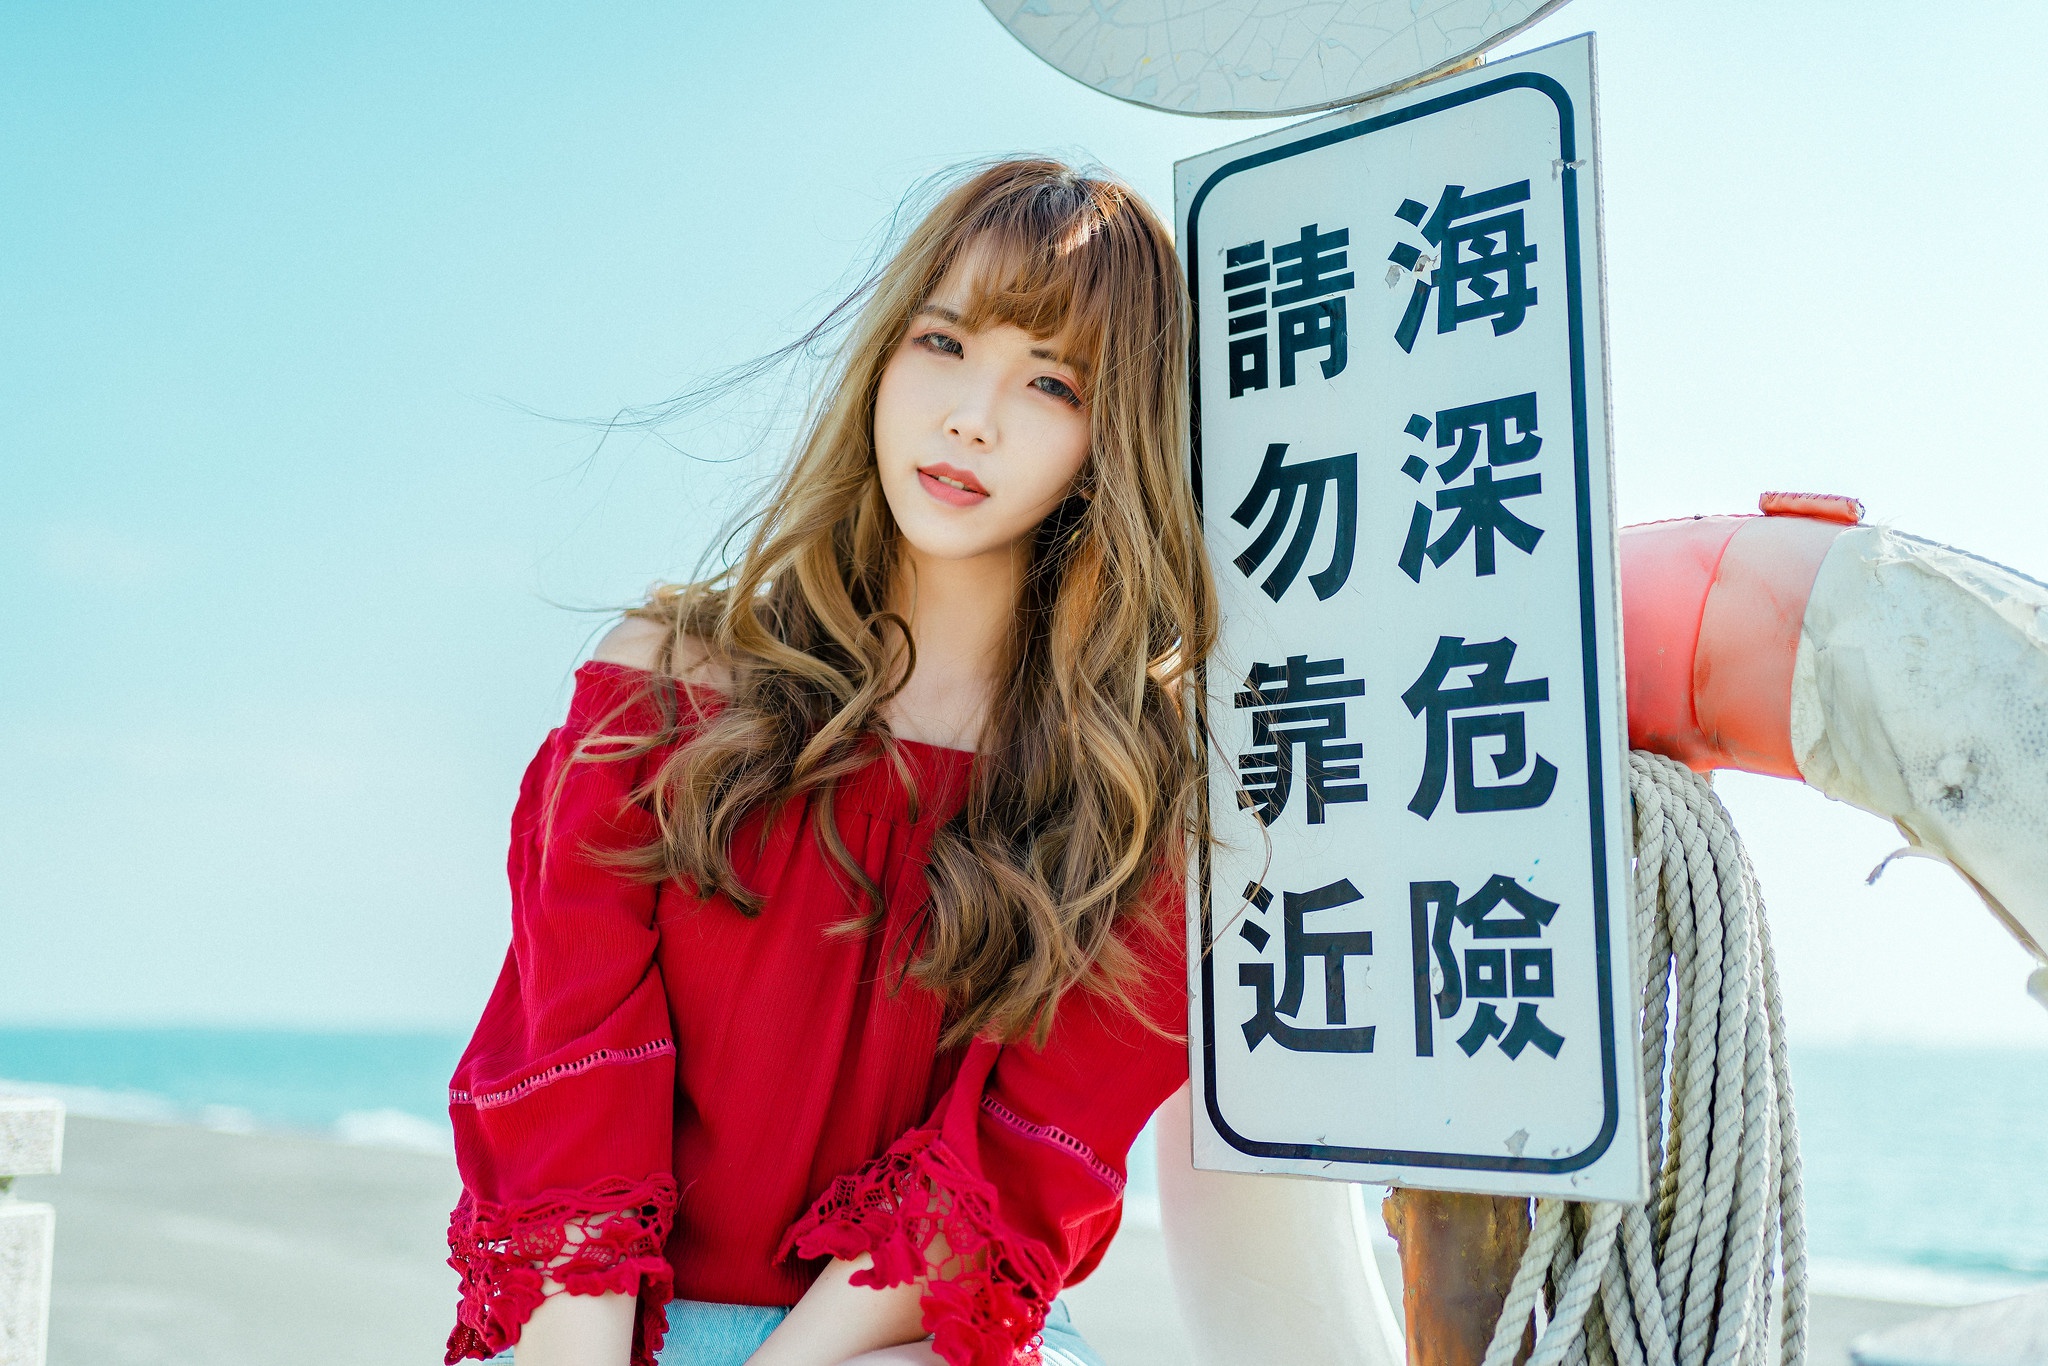 Asian Model Women Long Hair Brunette Sign Bare Shoulders Red Shirt Lifebelt Ropes Leaning Poles 2048x1366